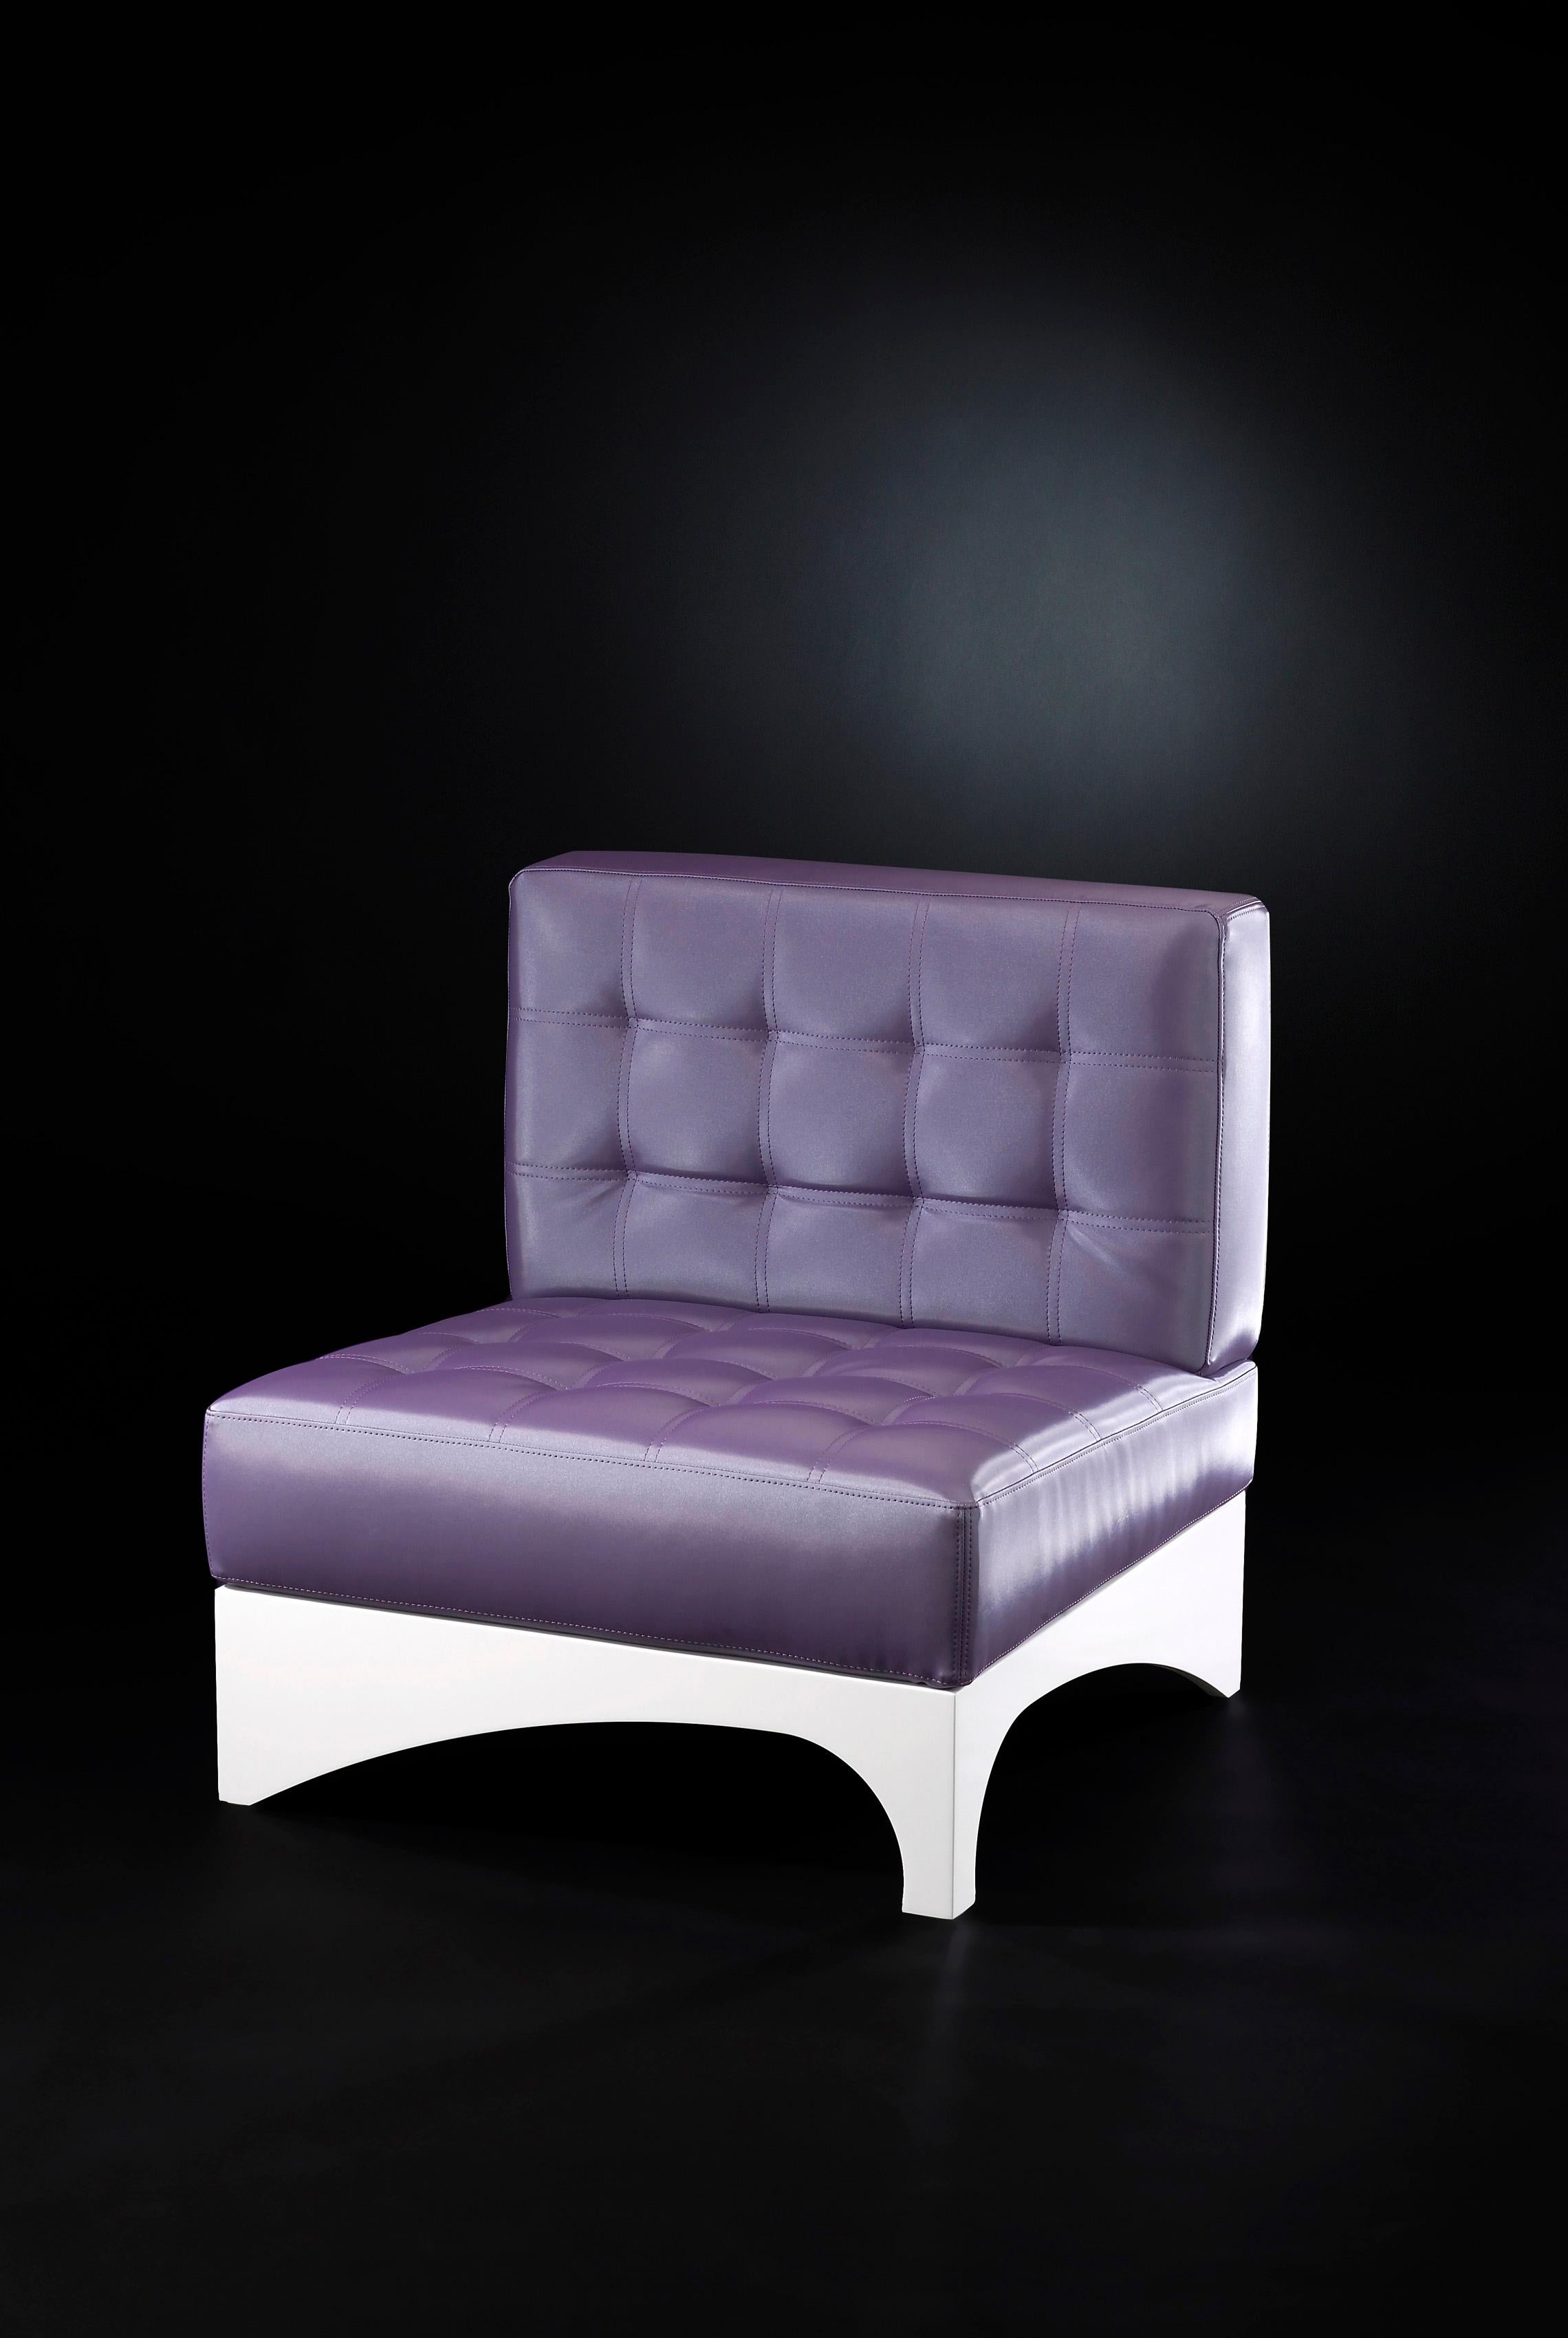 Les meubles VG représentent le luxe en termes d'exclusivité, de distinction et de haute qualité. Ils sont le fruit d'un design sophistiqué et exclusif à forte identité et sont le résultat d'une attention méticuleuse portée aux détails typiques des